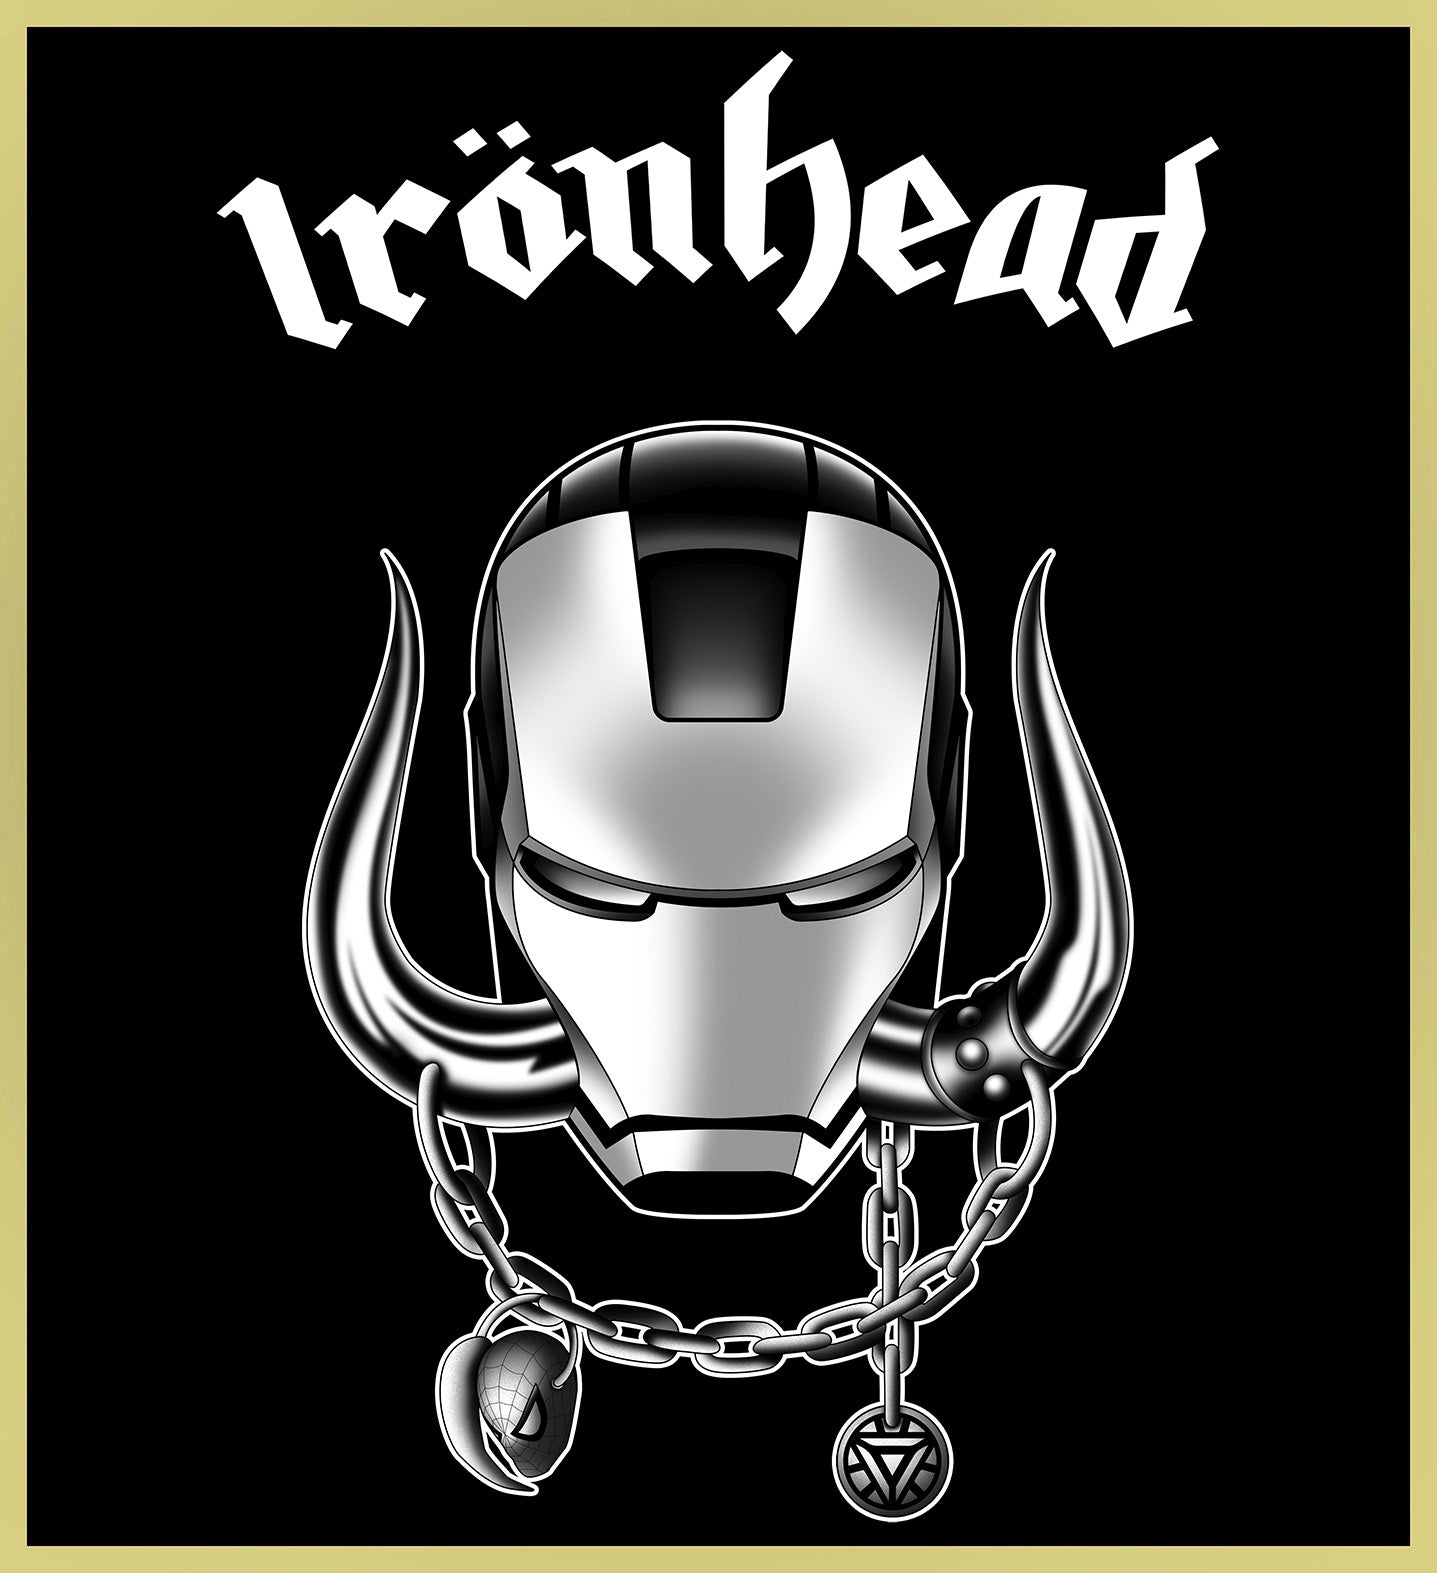 IRON MAN - IRON HEAD / MOTÖRHEAD - HEAVY METAL TURBO TEE!